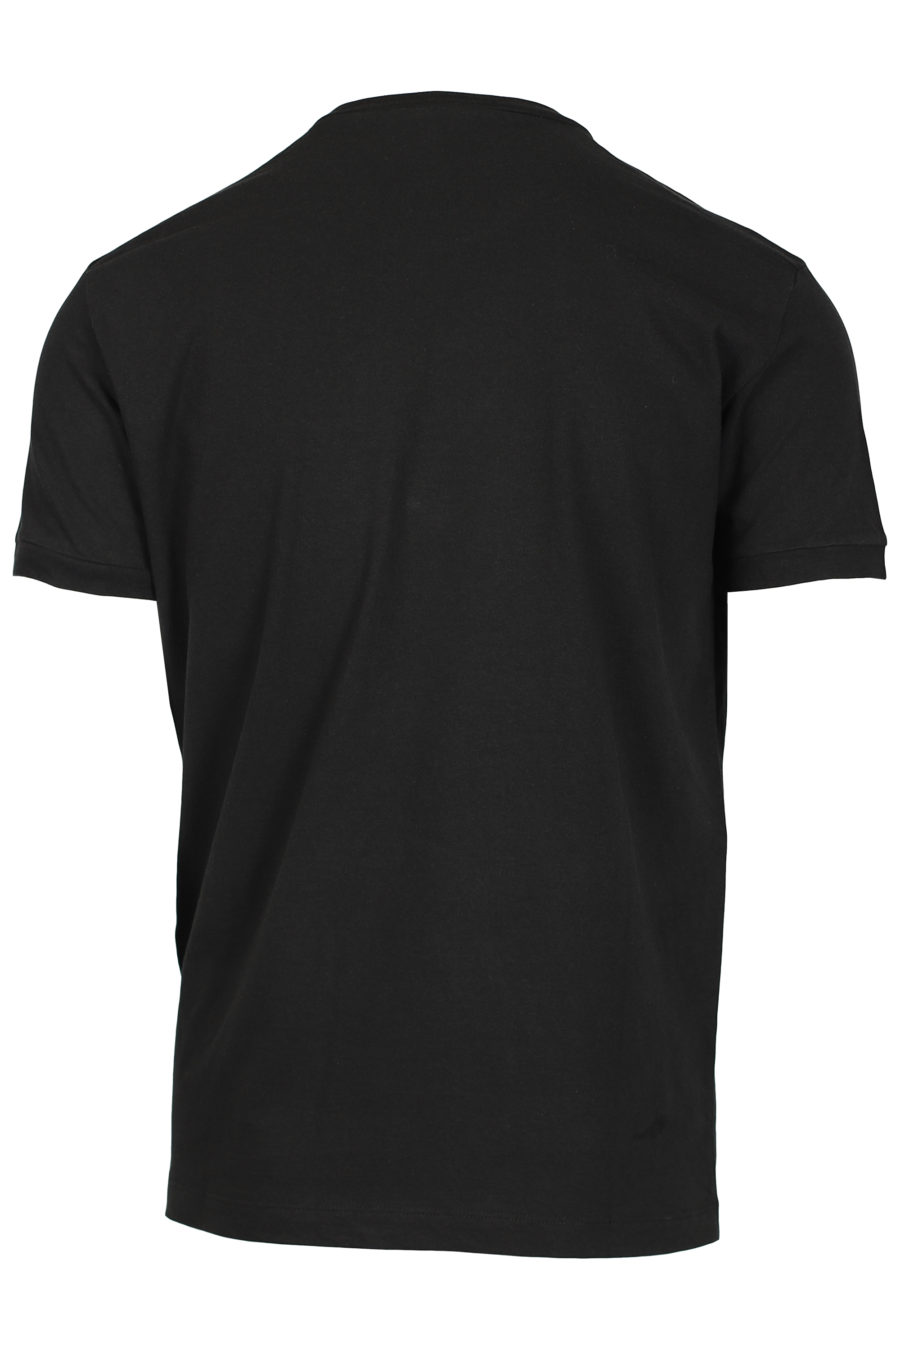 Schwarzes T-Shirt mit kleinem Aufdruck - IMG 2555